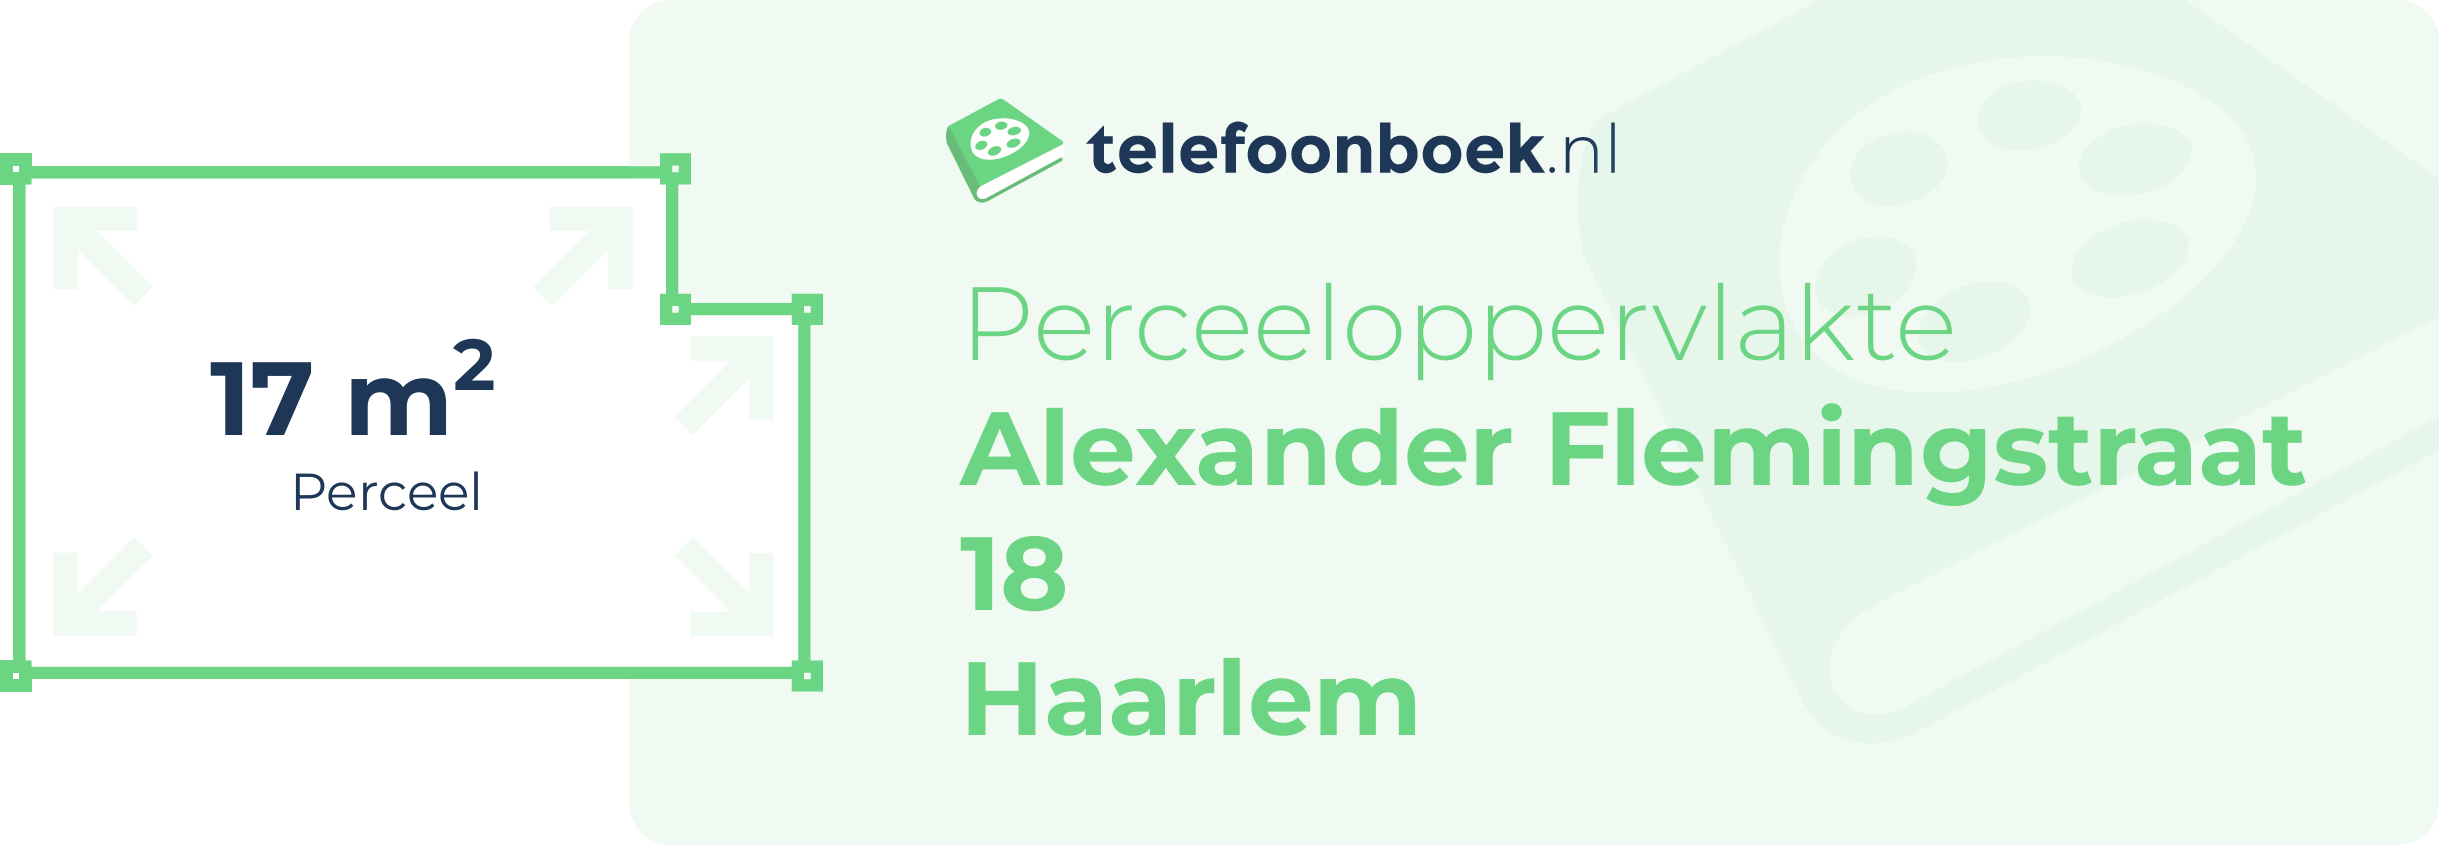 Perceeloppervlakte Alexander Flemingstraat 18 Haarlem